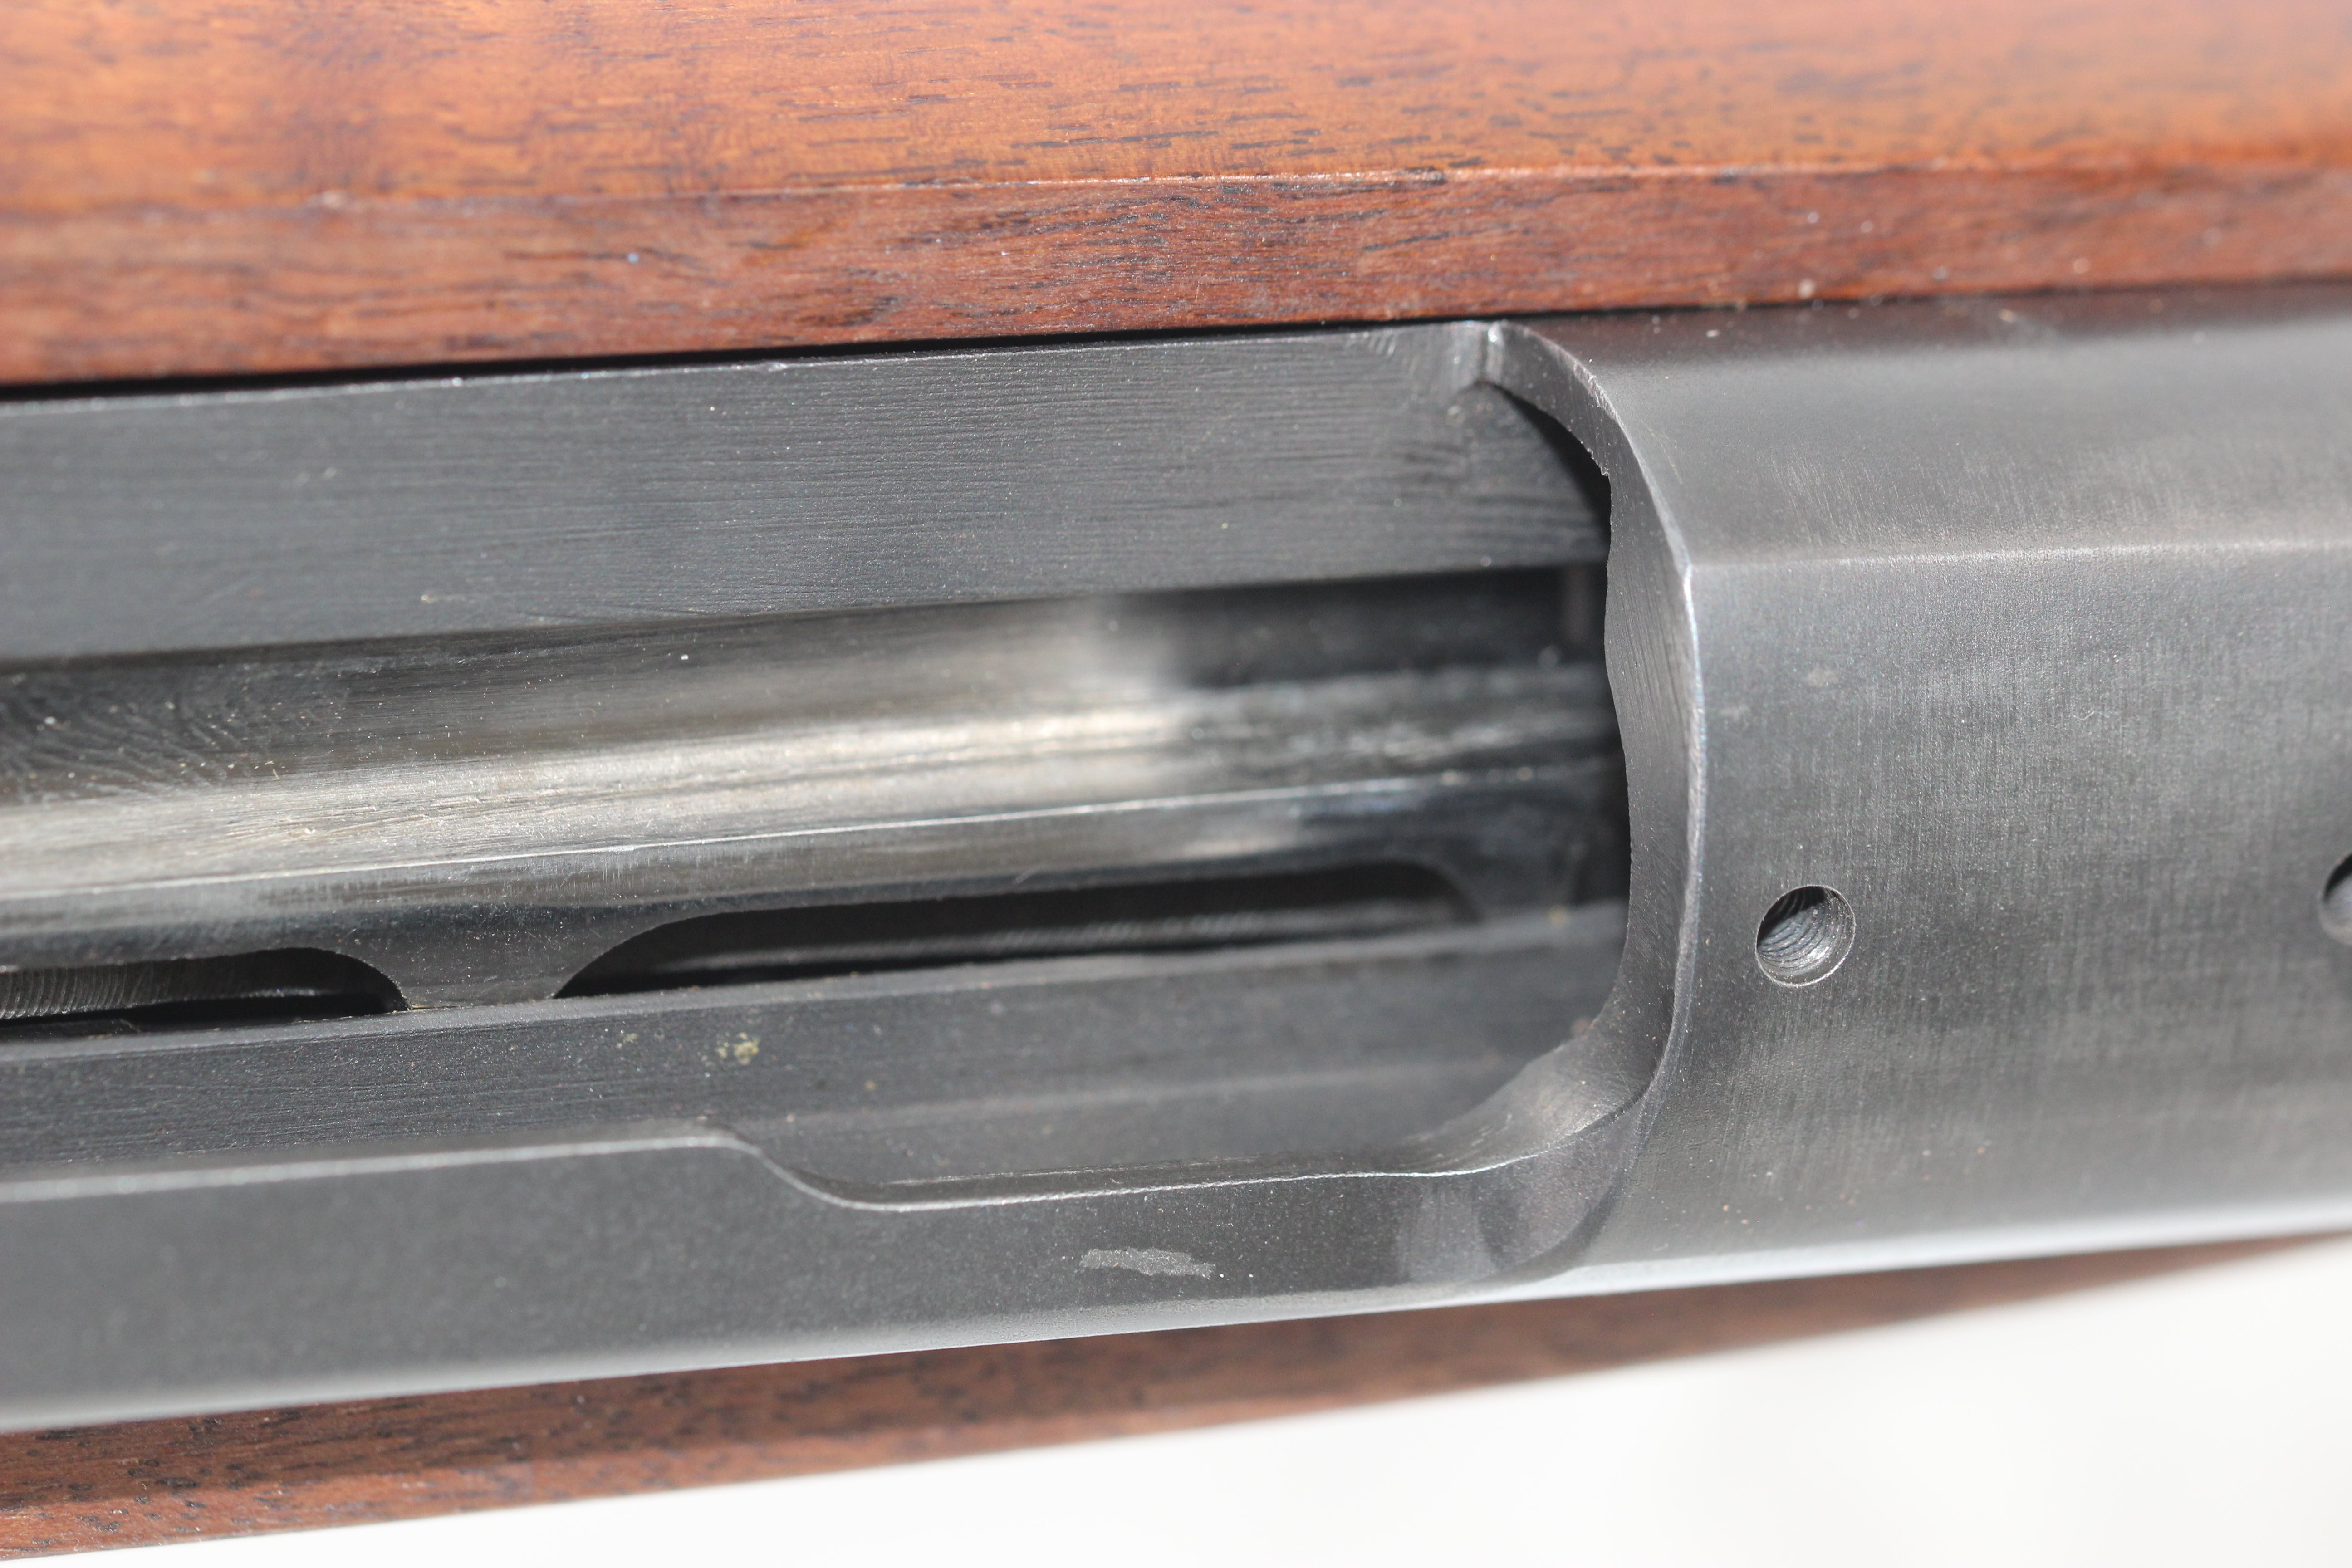 .280 Remington Custom Bull Rifle - 1954